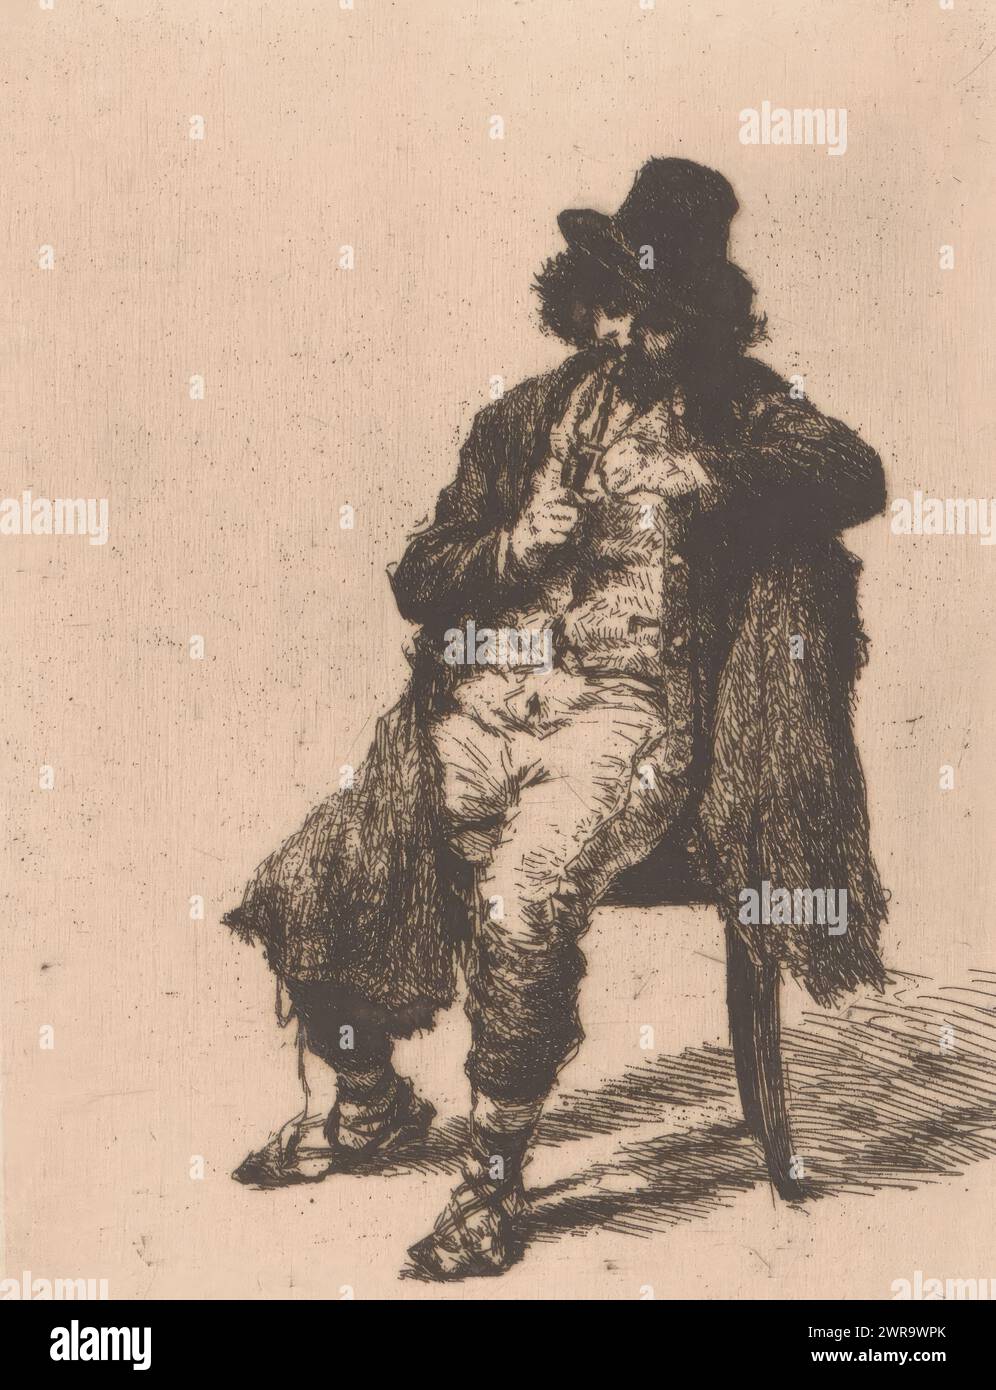 Fumatore di pipa su una sedia, stampatore: Edgard Farasyn, (firmato dall'artista), 1868 - 1910, carta, incisione, altezza 130 mm x larghezza 102 mm, stampa Foto Stock